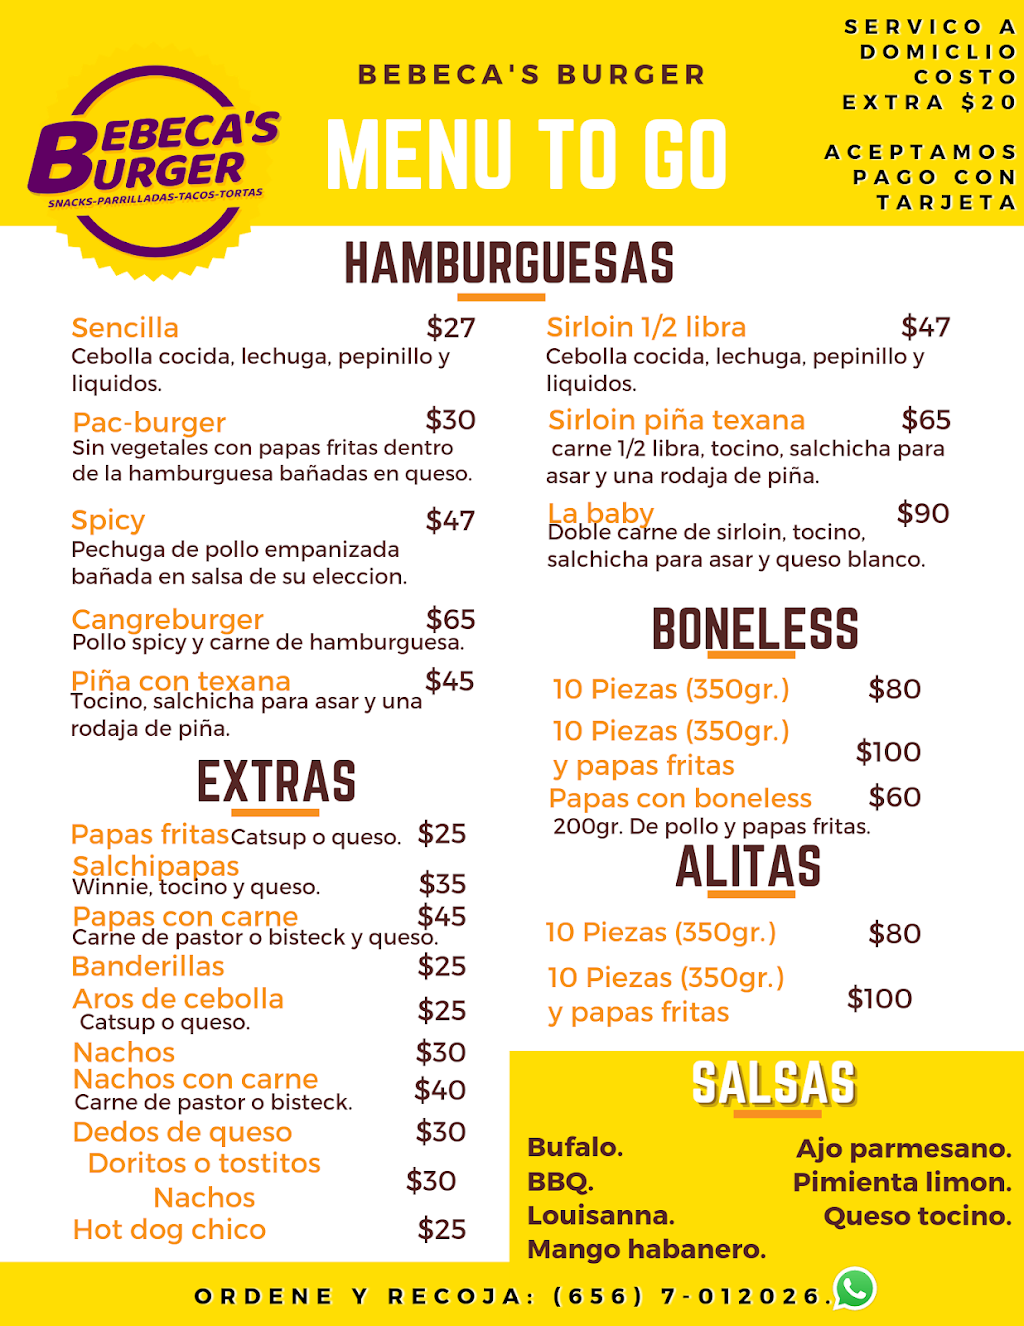 Bebecas Burger | yepomera 6156, Hacienda de Las Torres, Universidad, 32695 Cd Juárez, Chih., Mexico | Phone: 656 701 2026